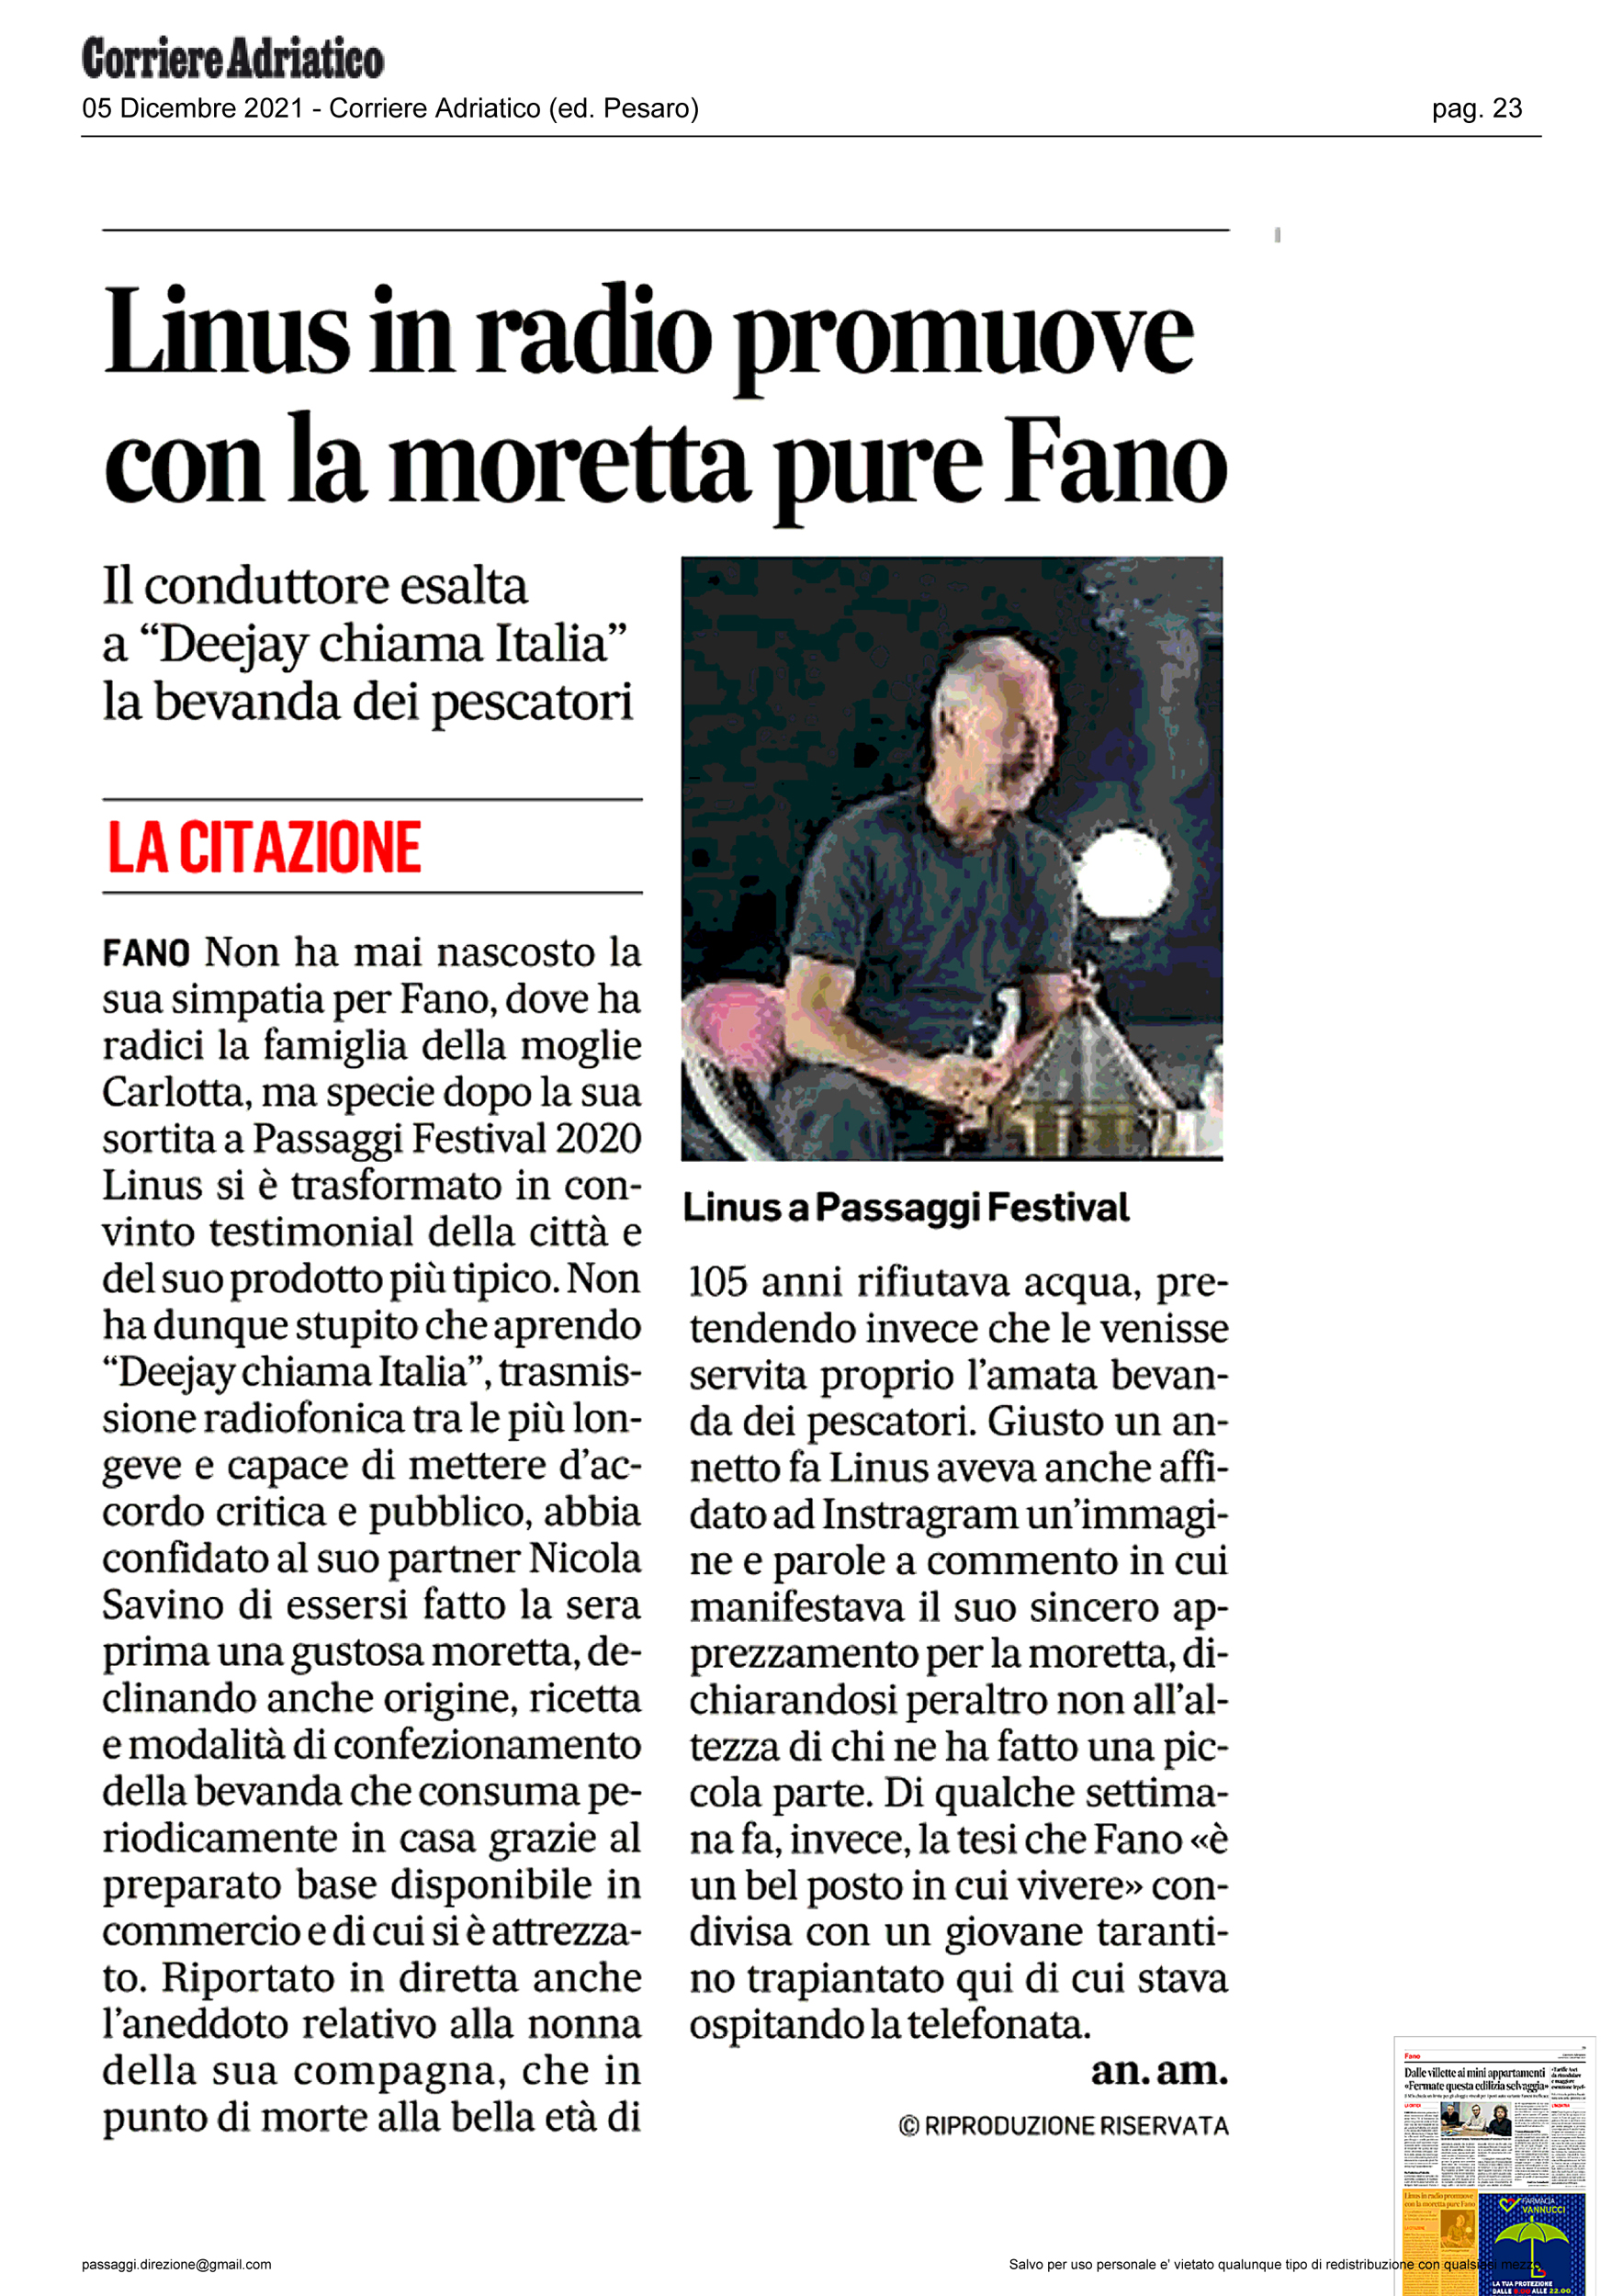 Corriere_Adriatico_linu-in-radio-con-la-moretta-promuove-pure-fano